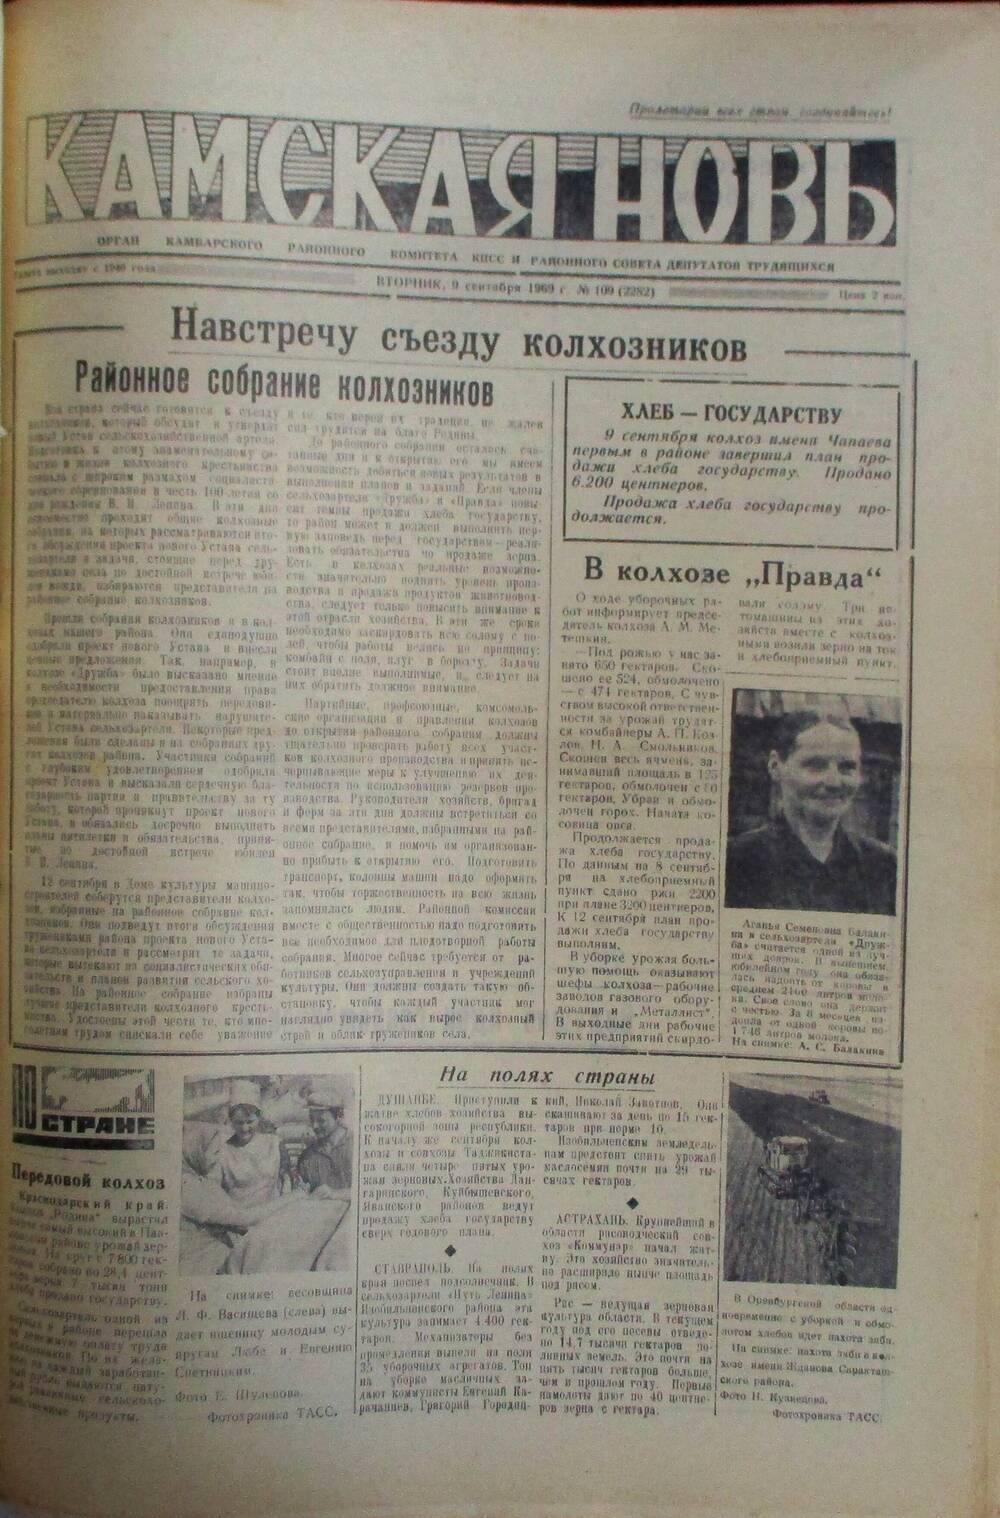 Газеты Камская новь за 1969 год, орган Камбарского райсовета и  РККПСС, с №1 по №66, с №68 по №156. №109.